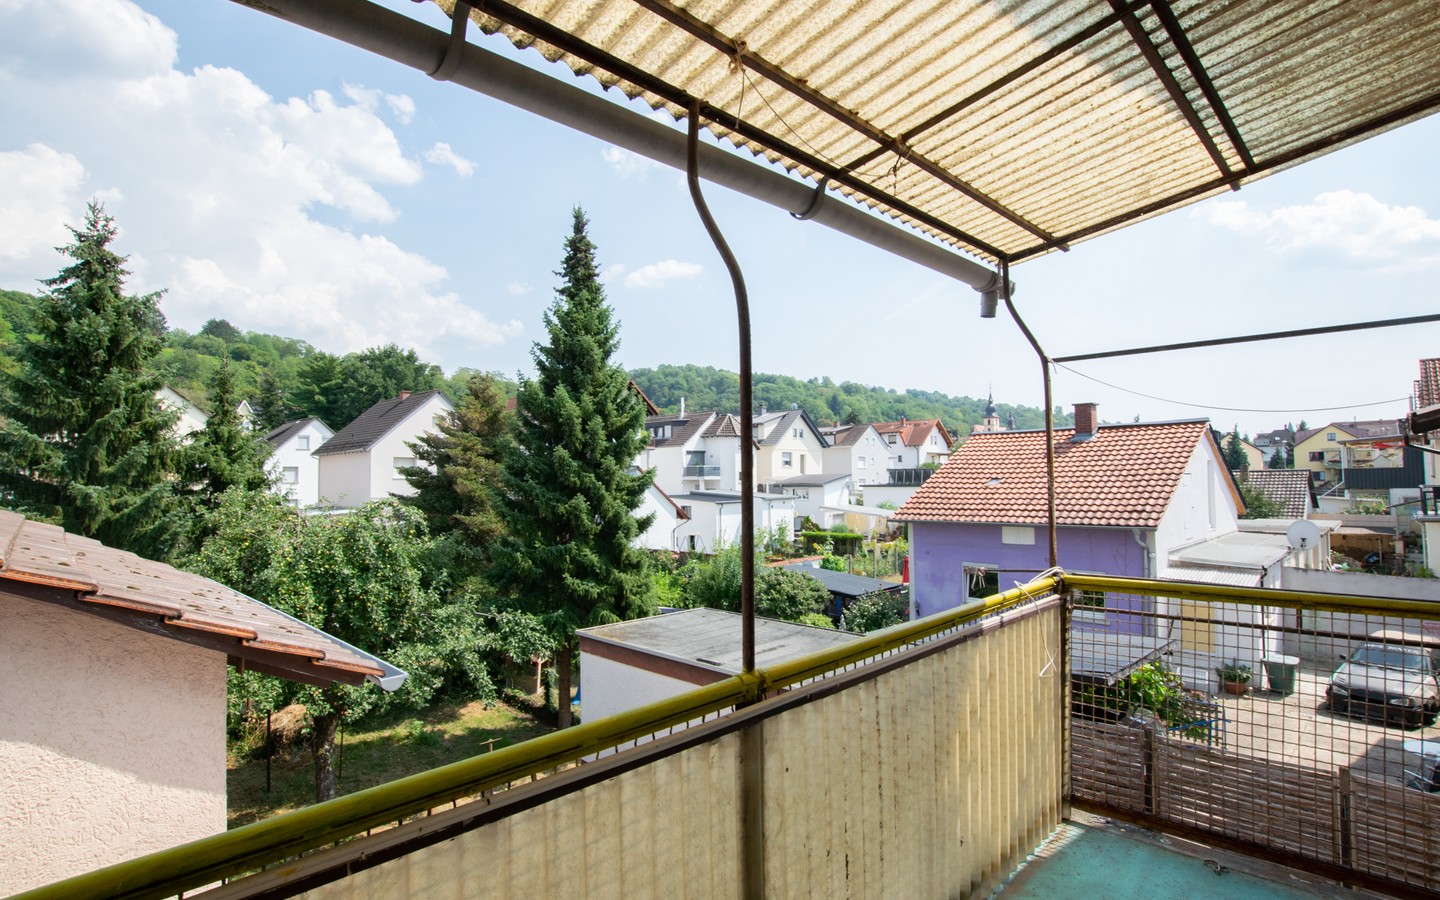 Balkon - Freistehendes Ein- bis Zweifamilienhaus mit Garten in ruhiger Lage von Hemsbach!